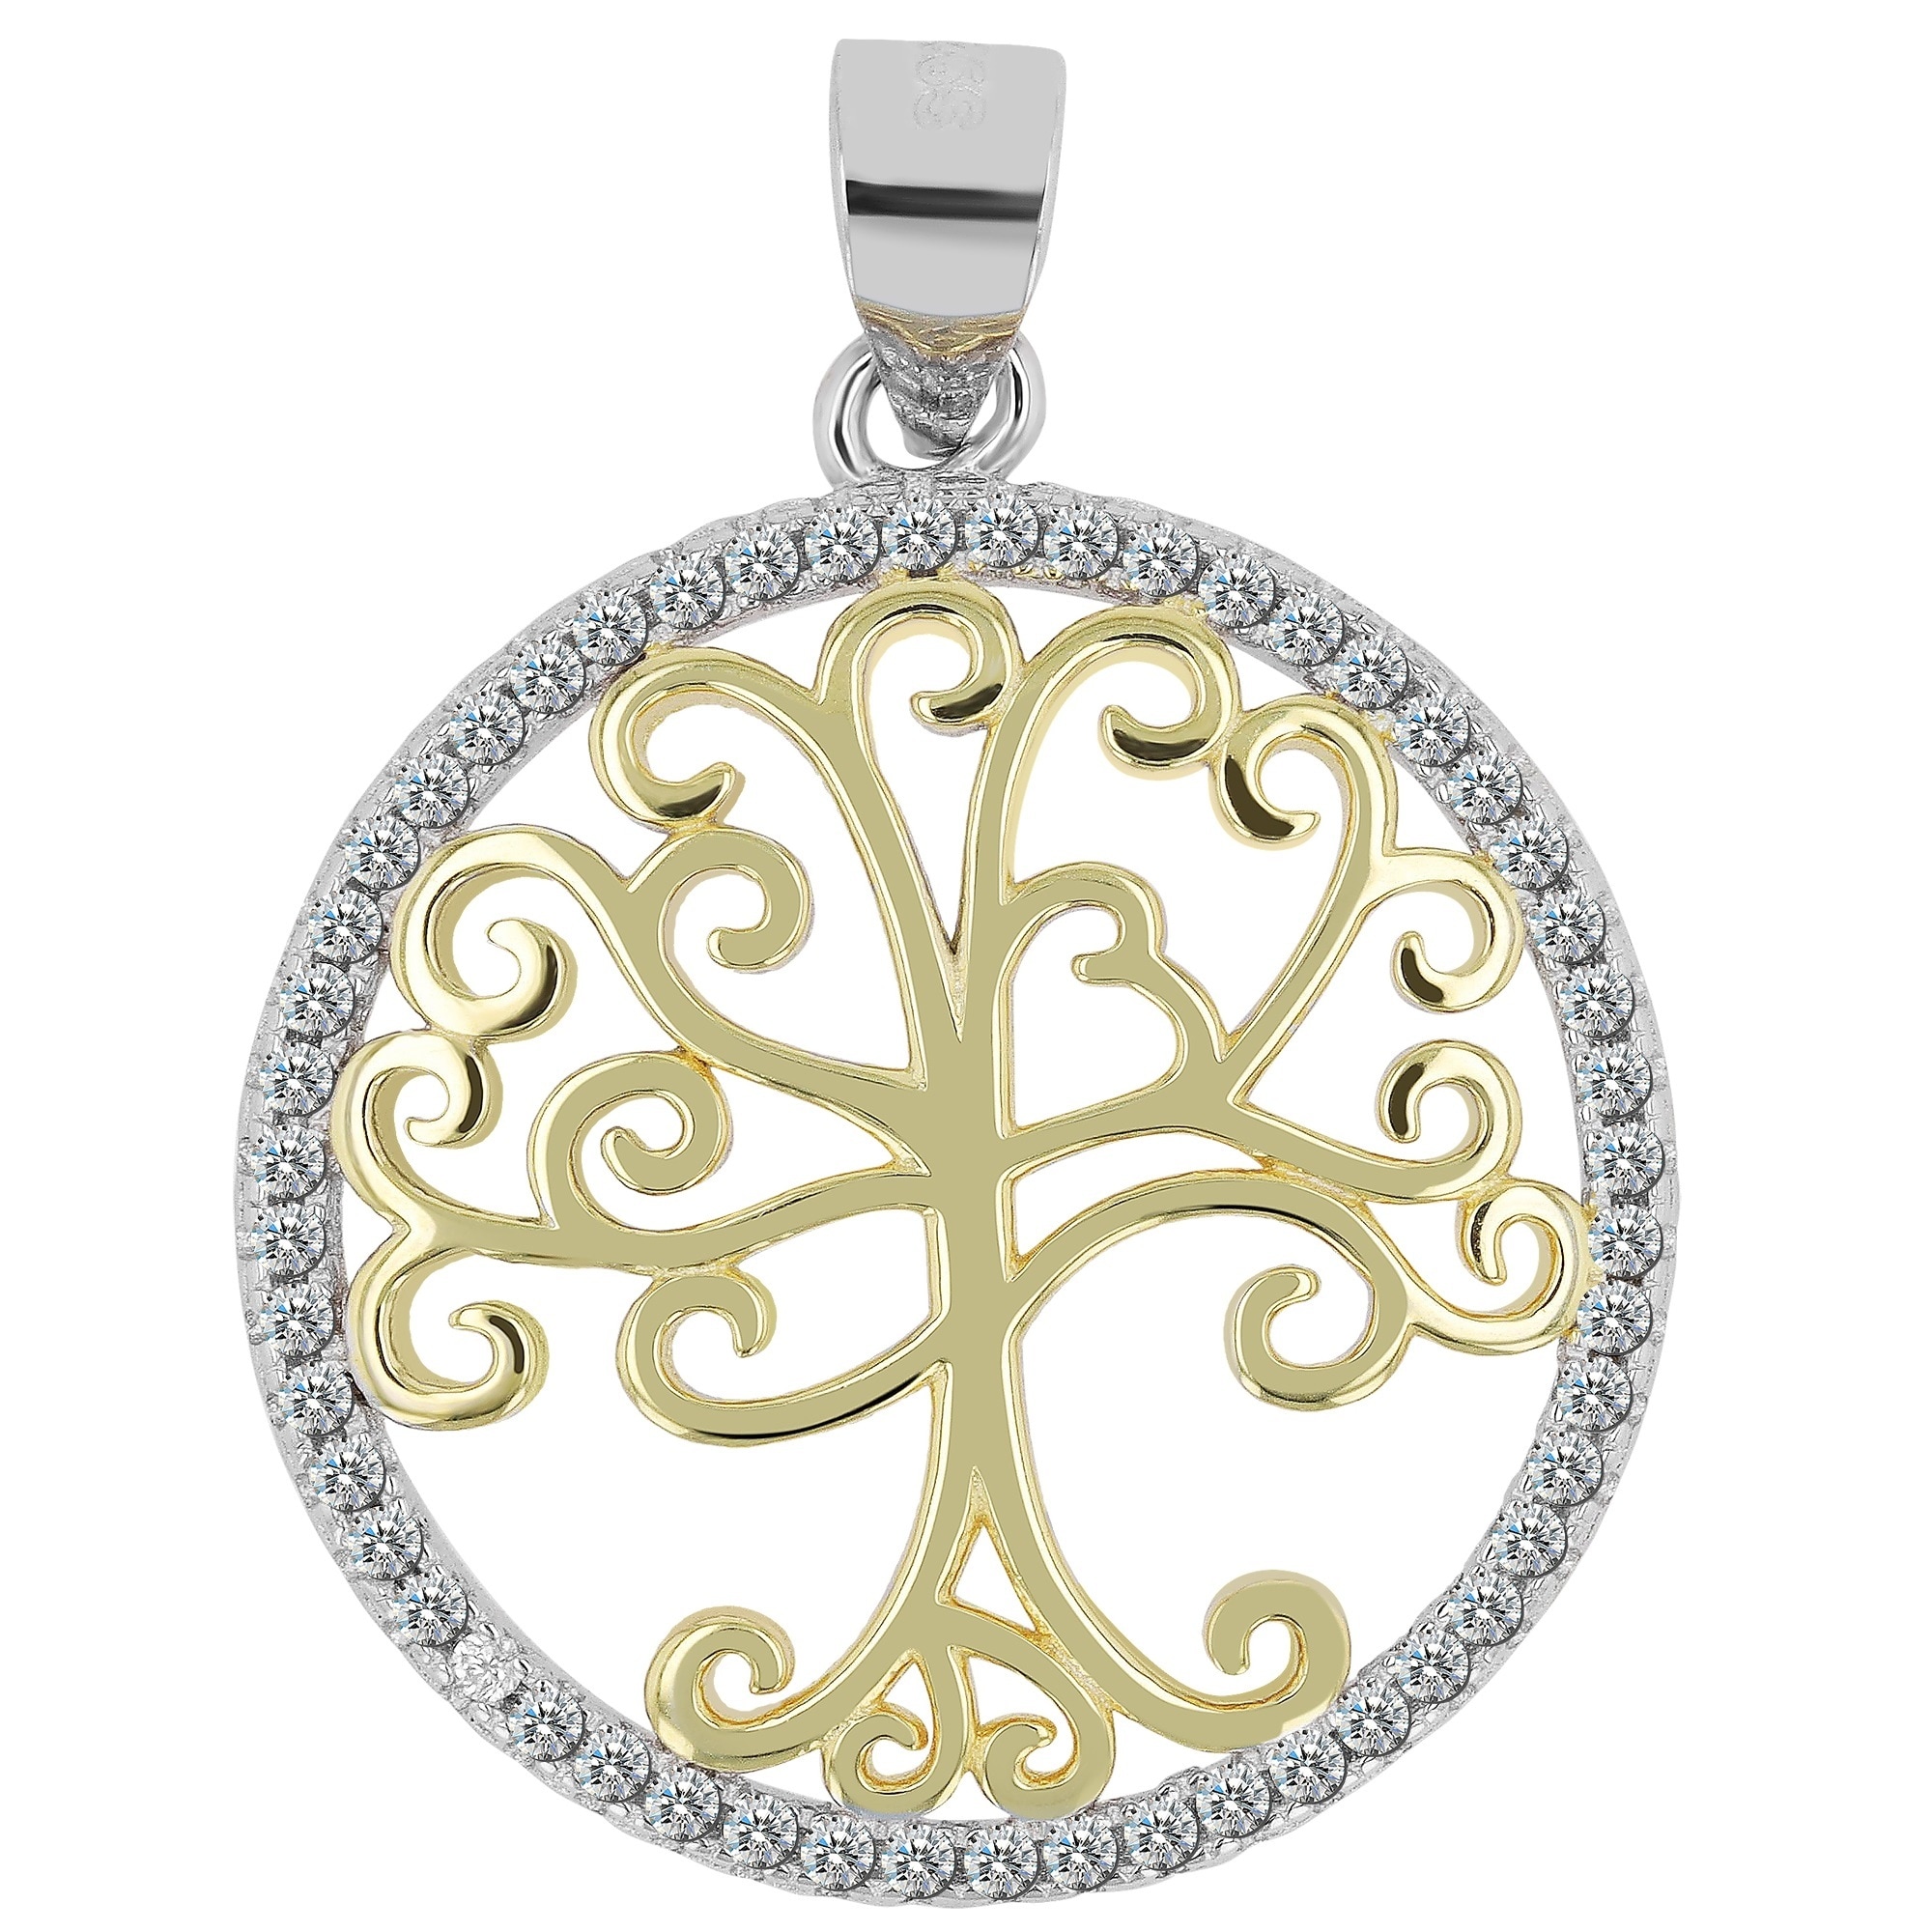 Kettenanhänger »Anhänger Lebensbaum aus 925 Silber mit Zirkonia«